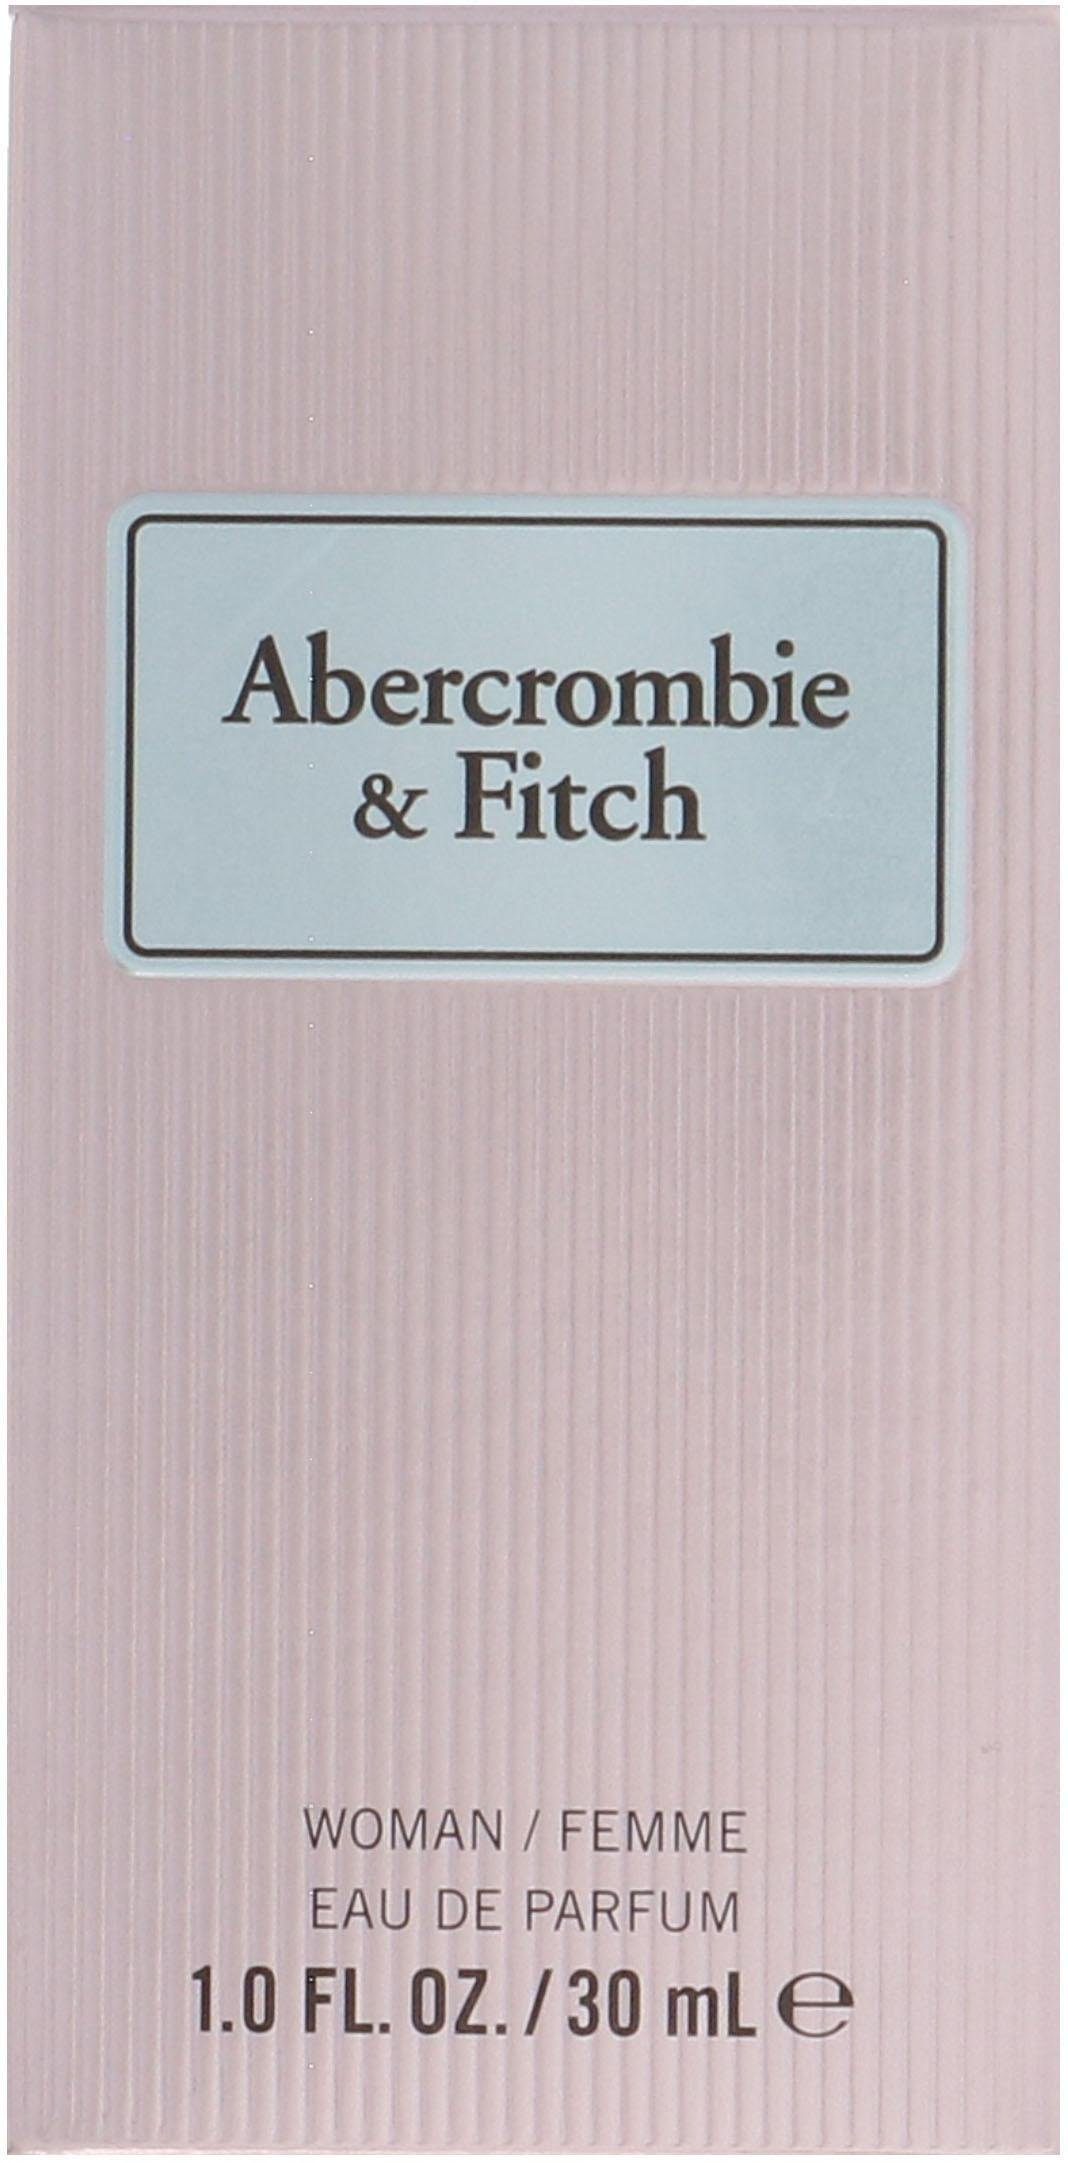 Fitch & Instinct Parfum First Eau de Abercrombie Women